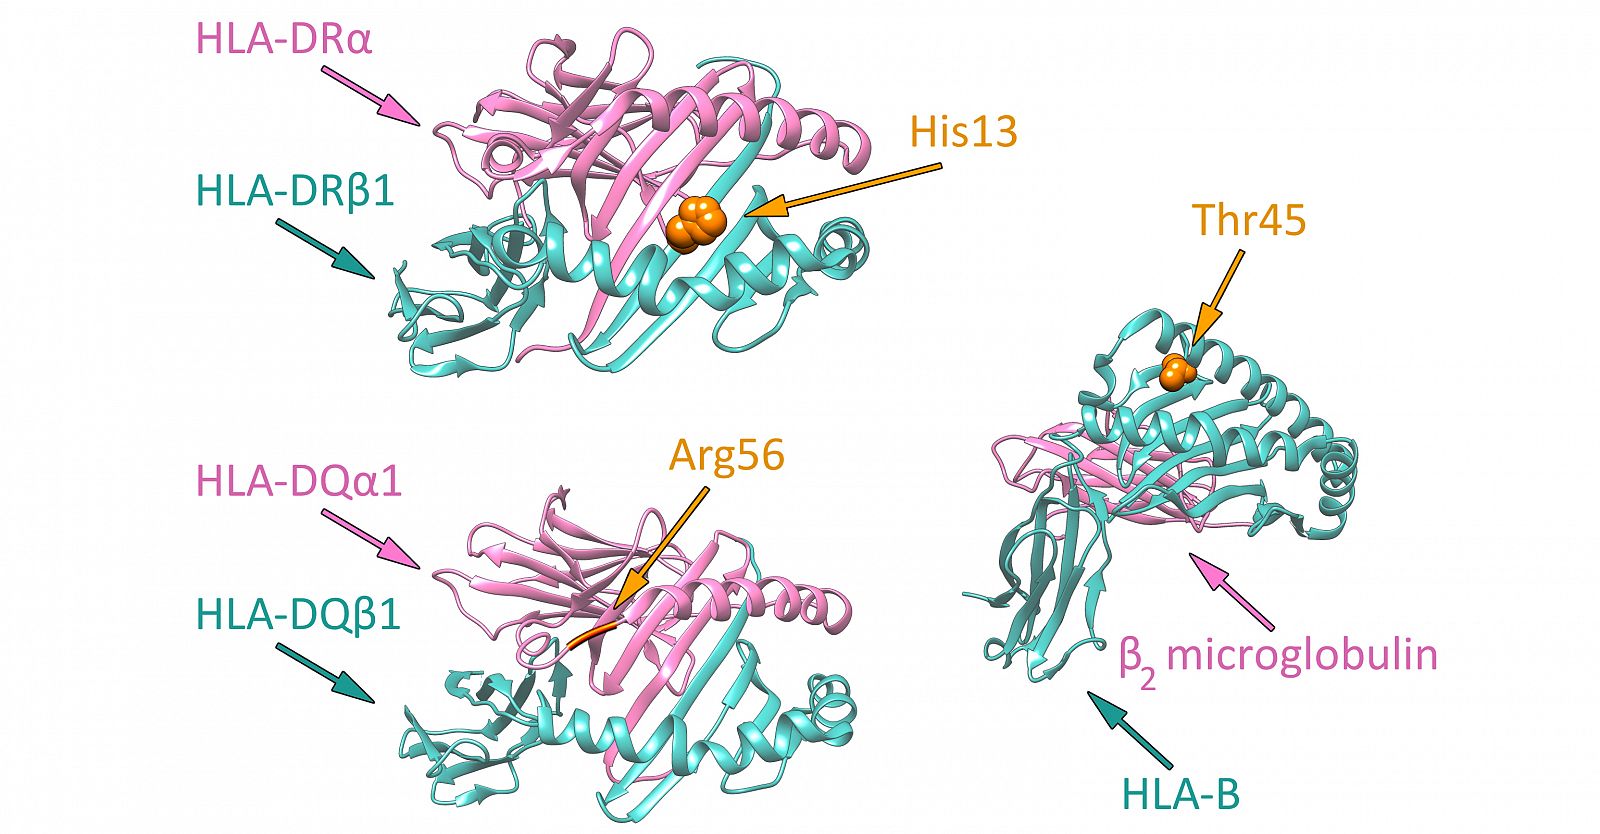 Representación de los aminoácidos de tres moléculas de histocompatibilidad involucrados en la predisposición a desarrollar arteritis de células gigantes